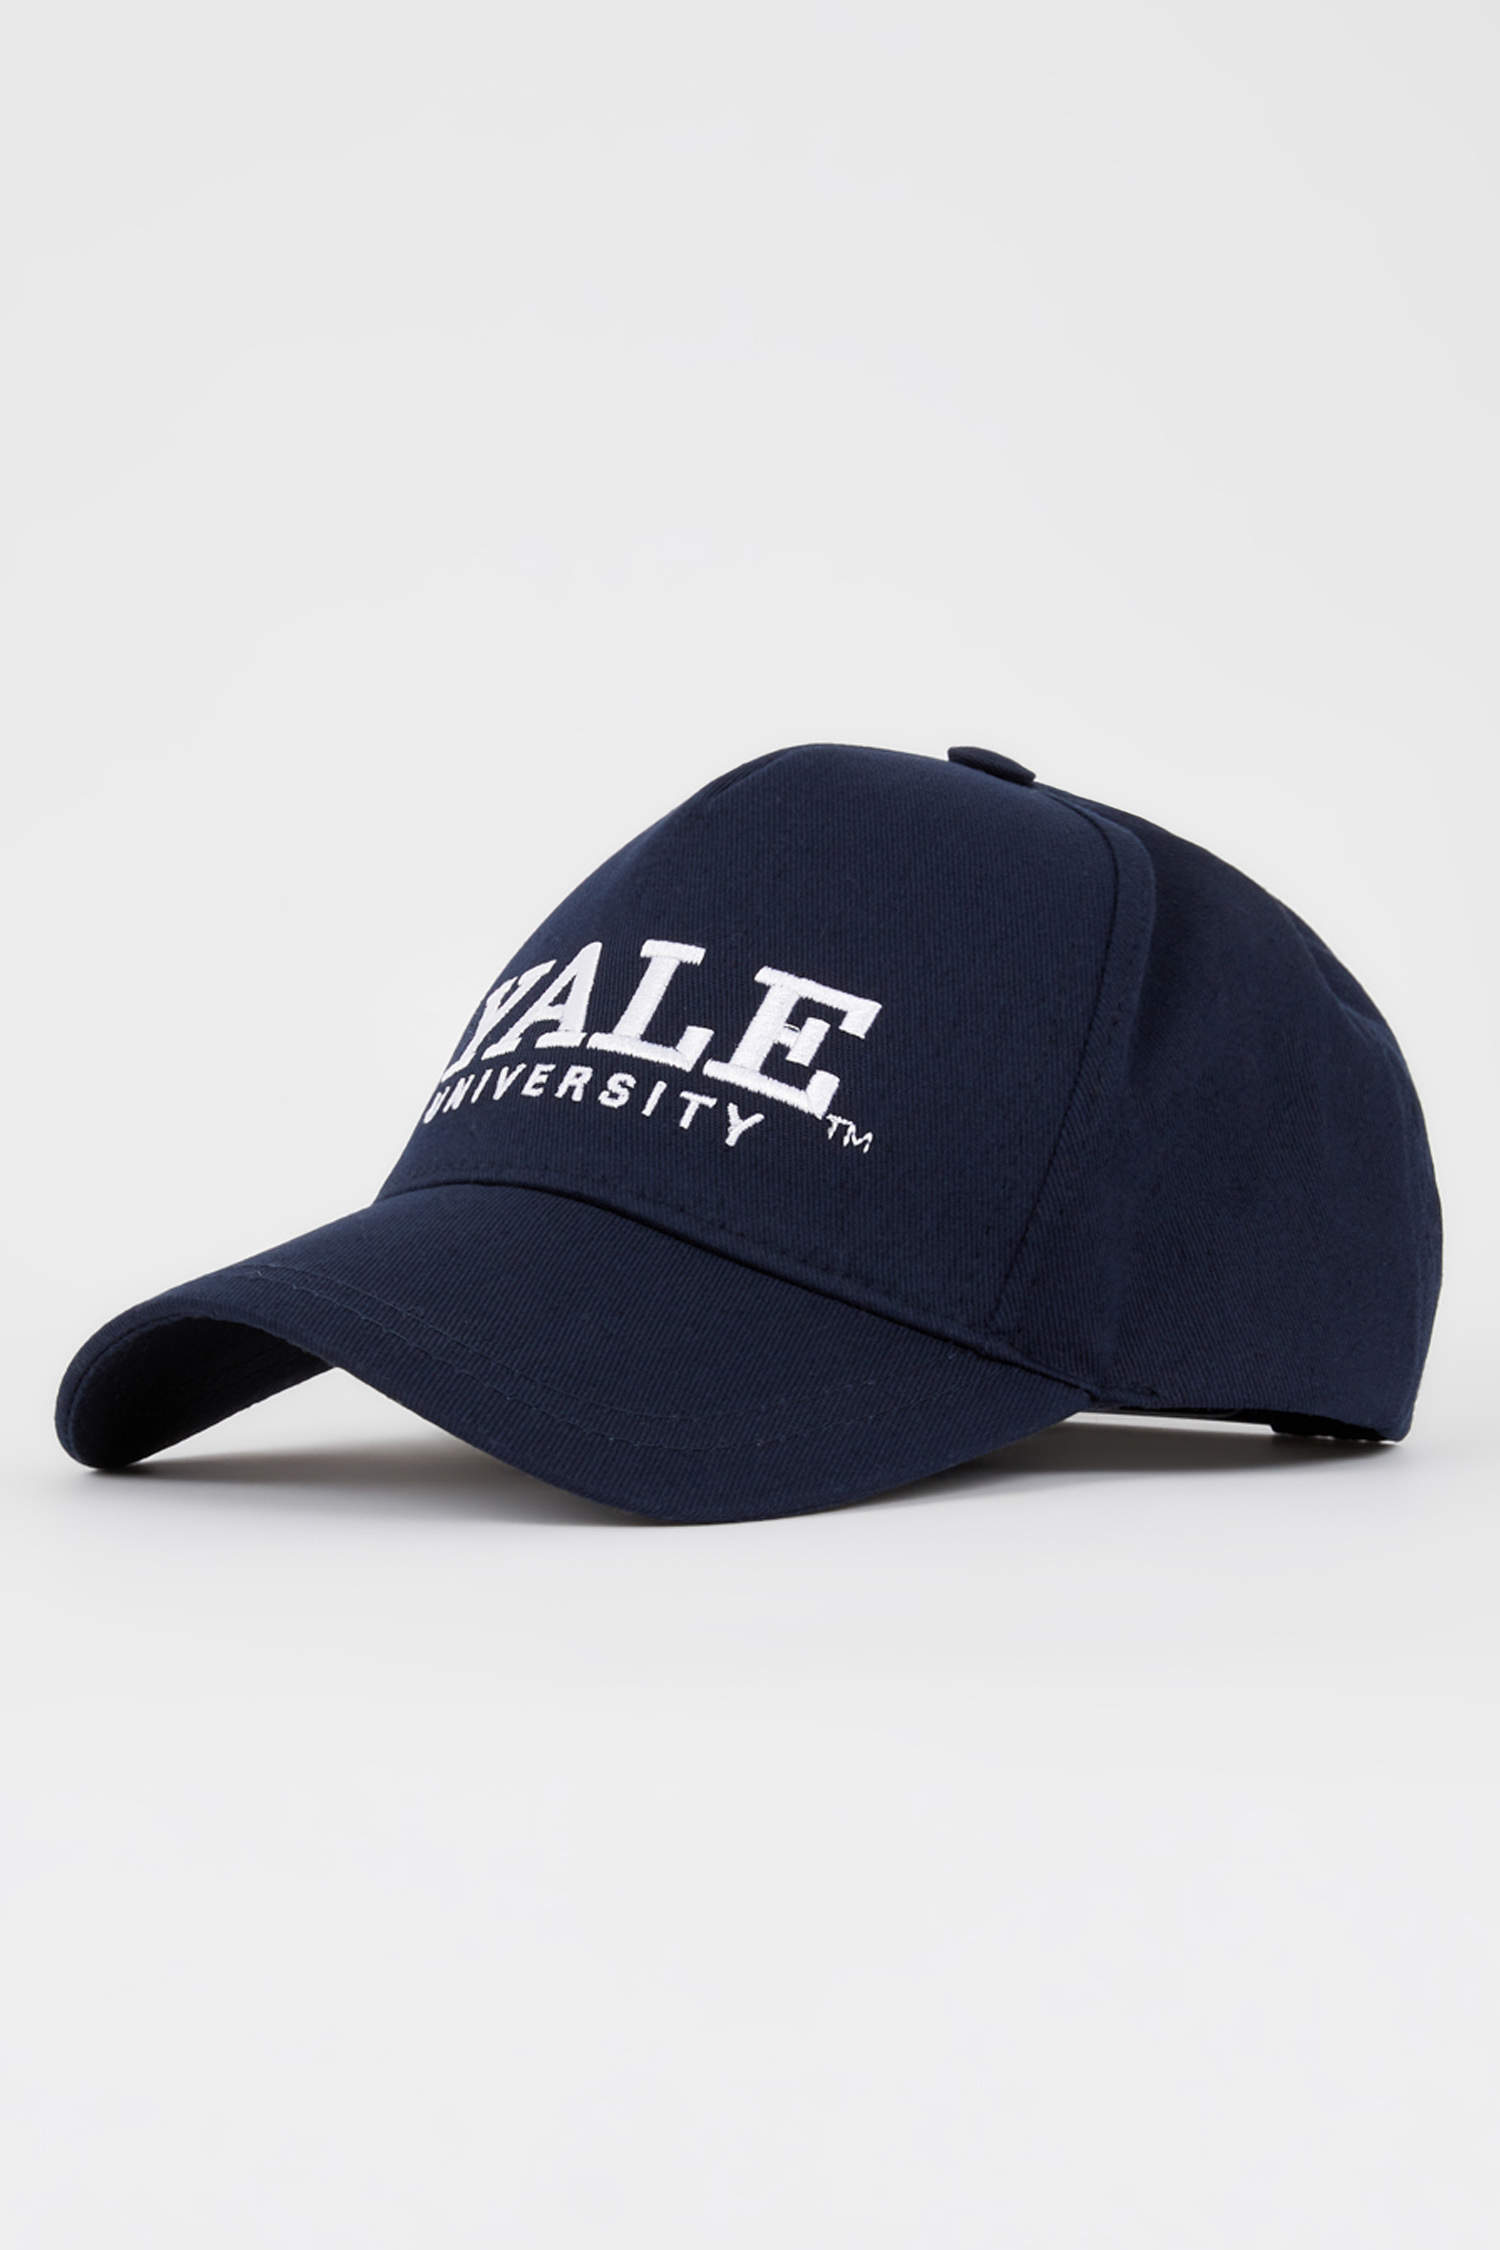 Defacto Kadın Yale University Lisanslı Cap Şapka. 2